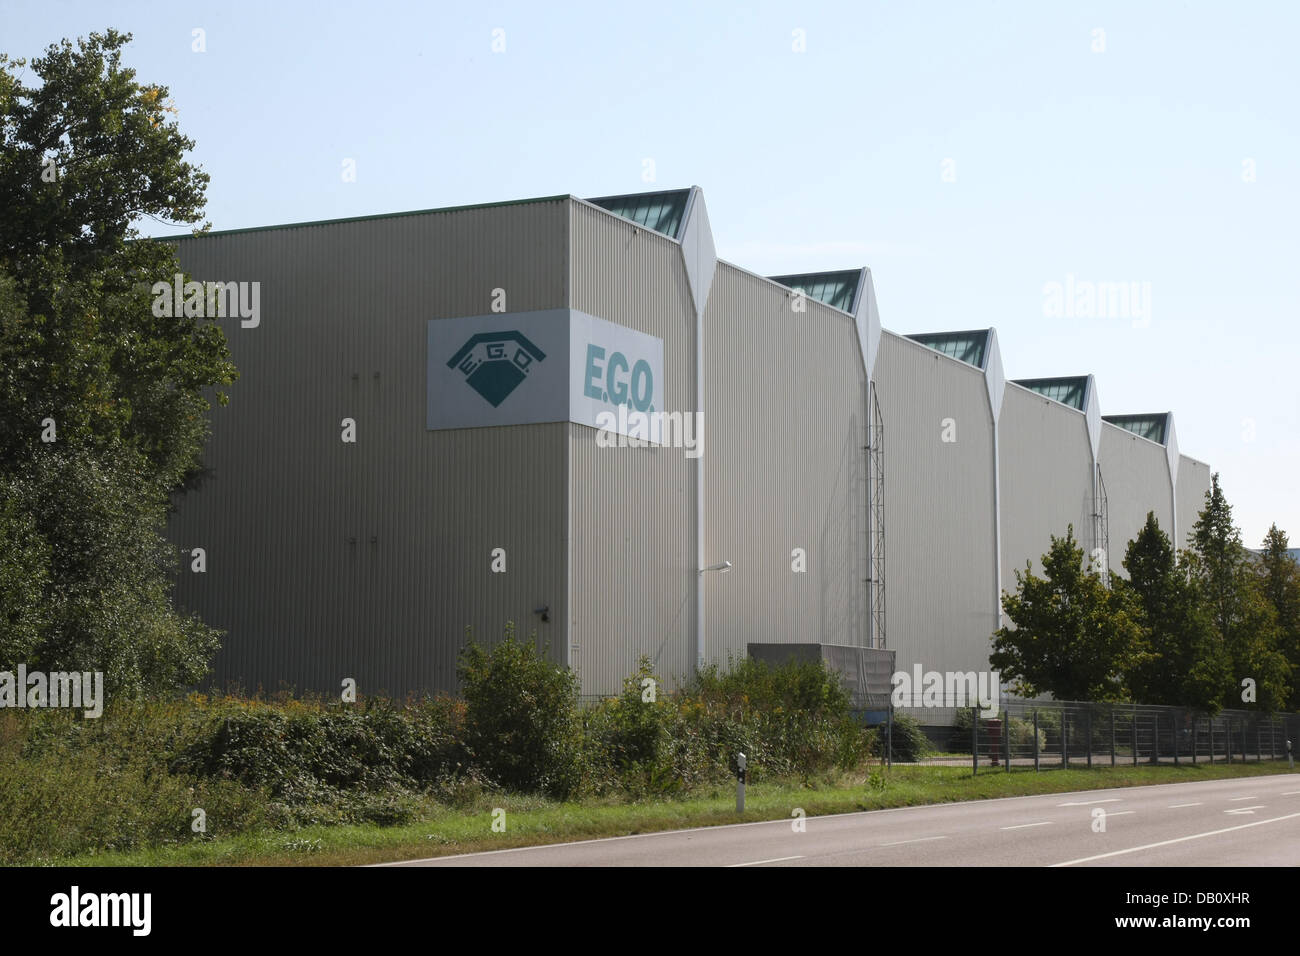 Vue sur le tissu du groupe E.G.O. Oberdingen, Allemagne, 20 août 2007. E.G.O. est clairement le fournisseur de composants pour pratiquement chaque cuisinière-, lave-vaisselle - lave-linge ou fabricant. Le groupe continue de produire des millions de plaques en fonte, bien plus important, ce sont les anneaux de chauffage par rayonnement, c'est la red-anneaux lumineux visibles sous les plaques de cuisson en céramique pour tourner sur la th Banque D'Images